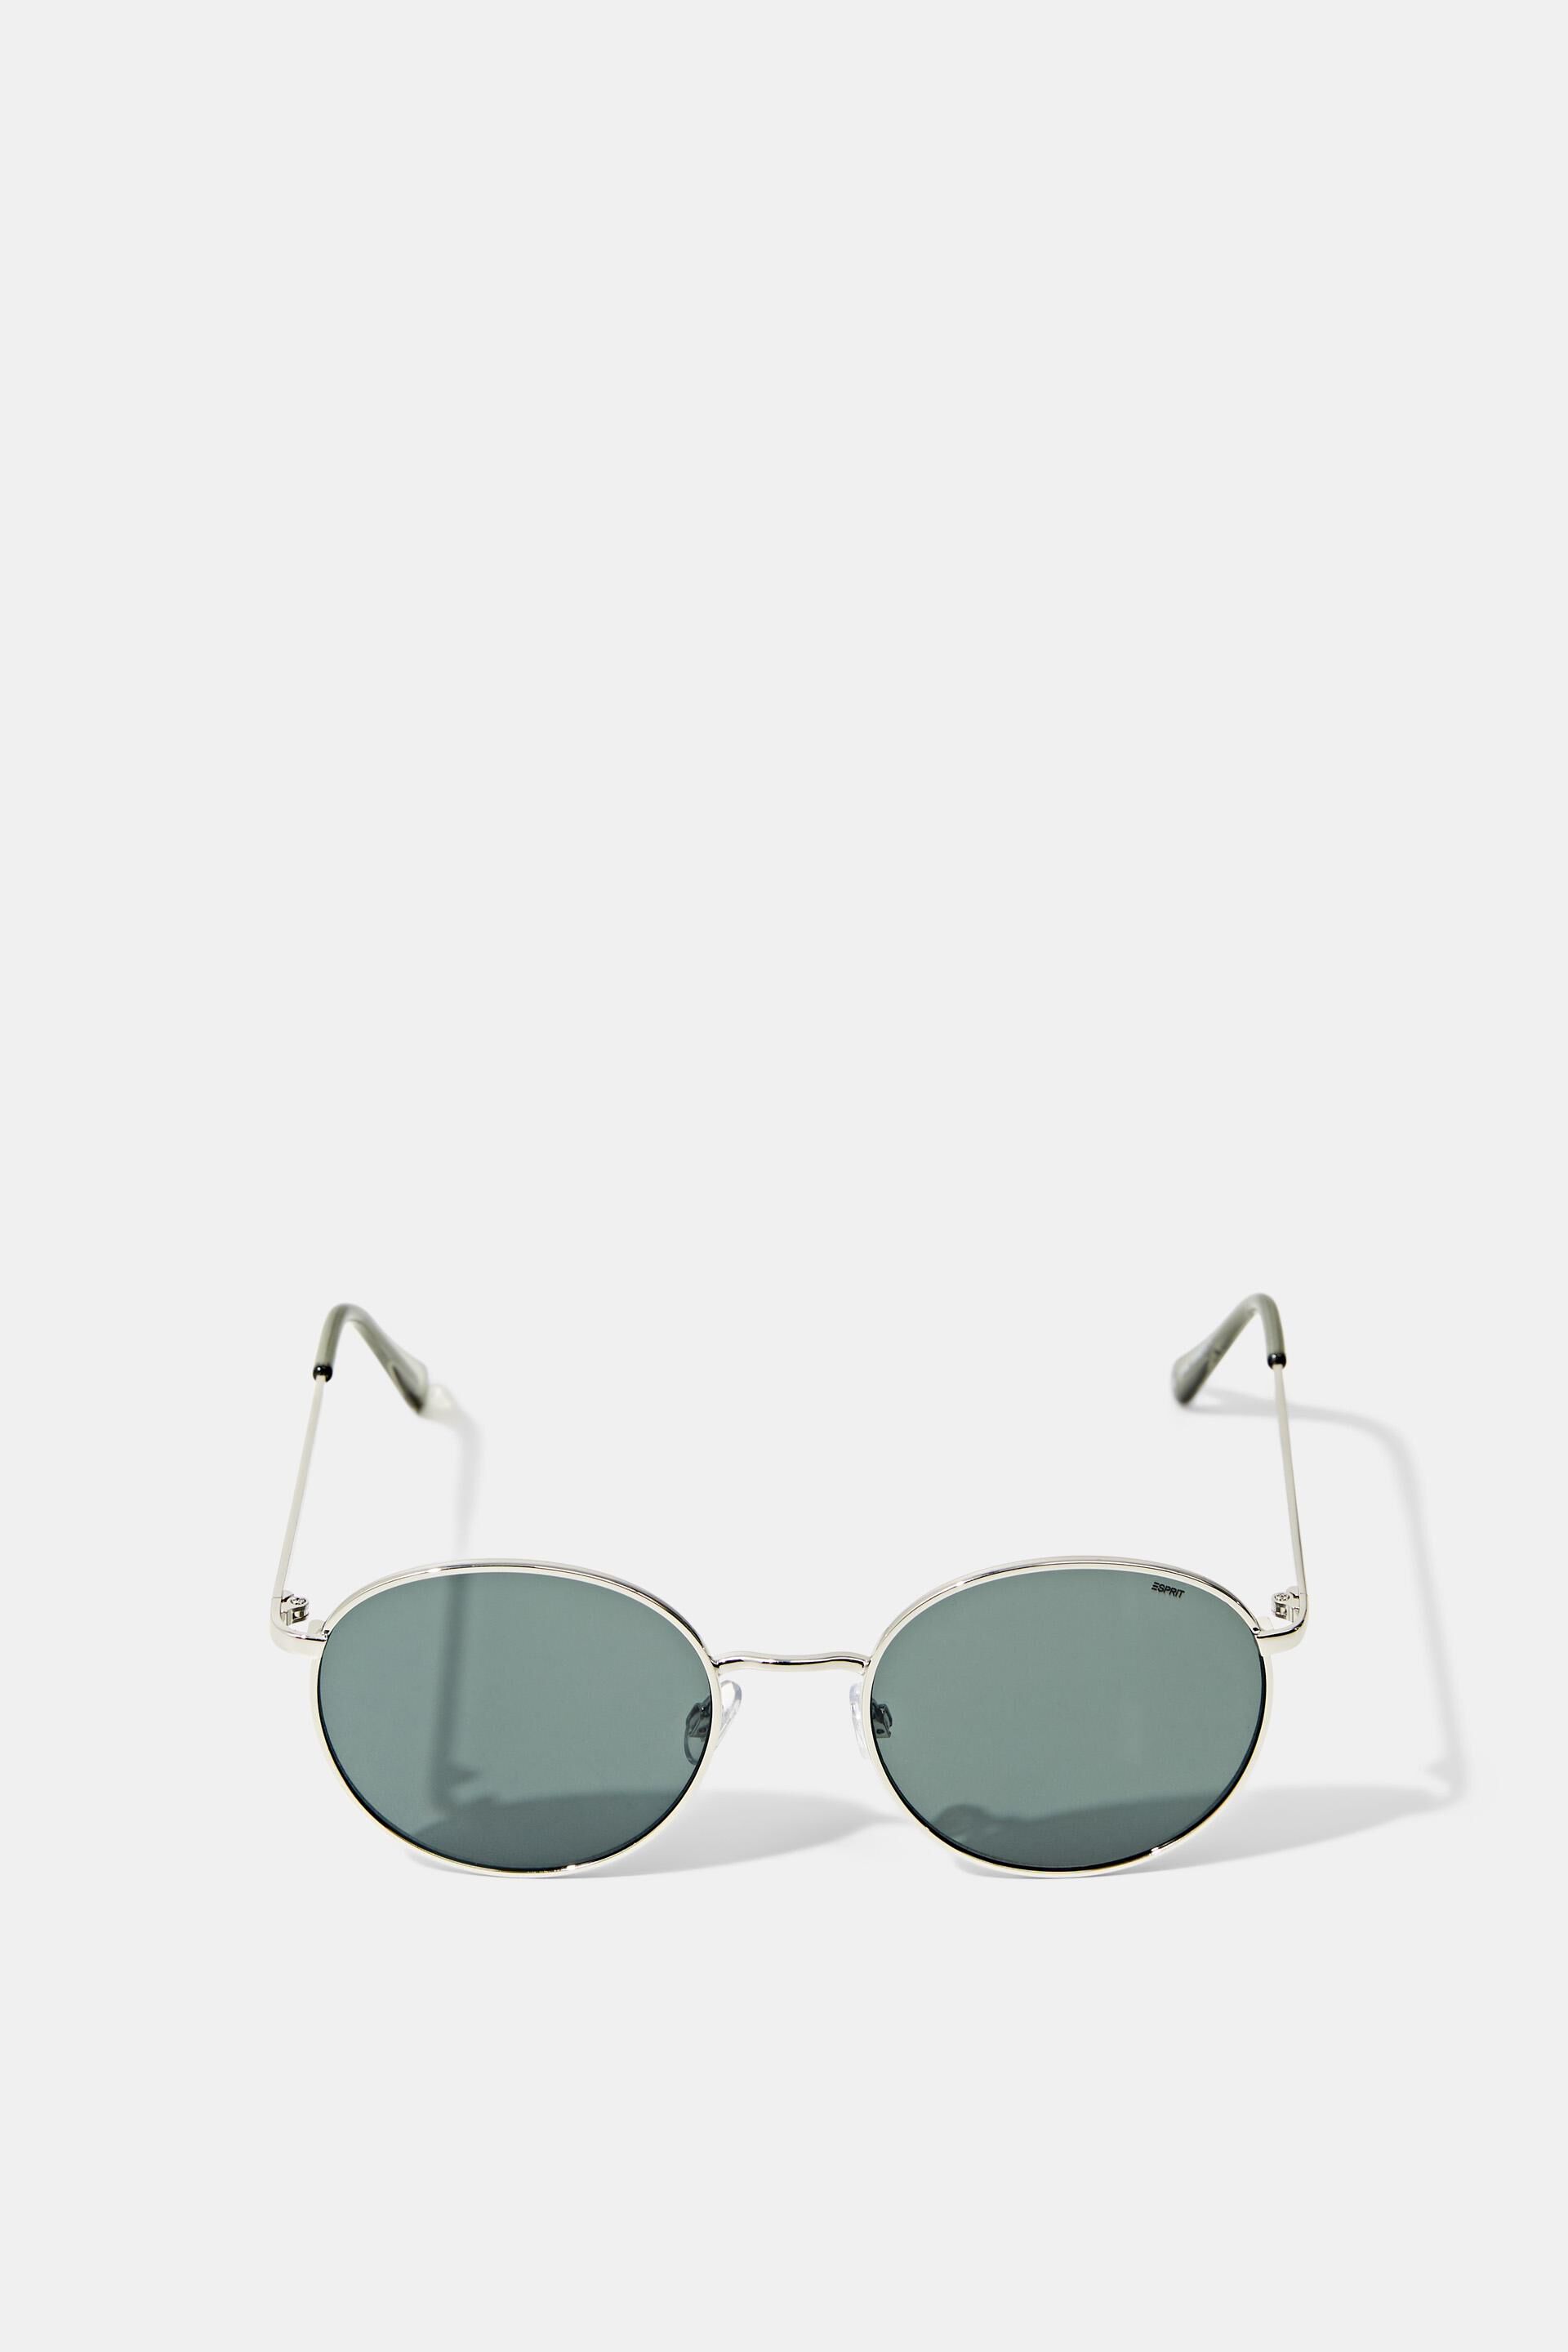 Esprit Online Store Sonnenbrille mit Metallrahmen